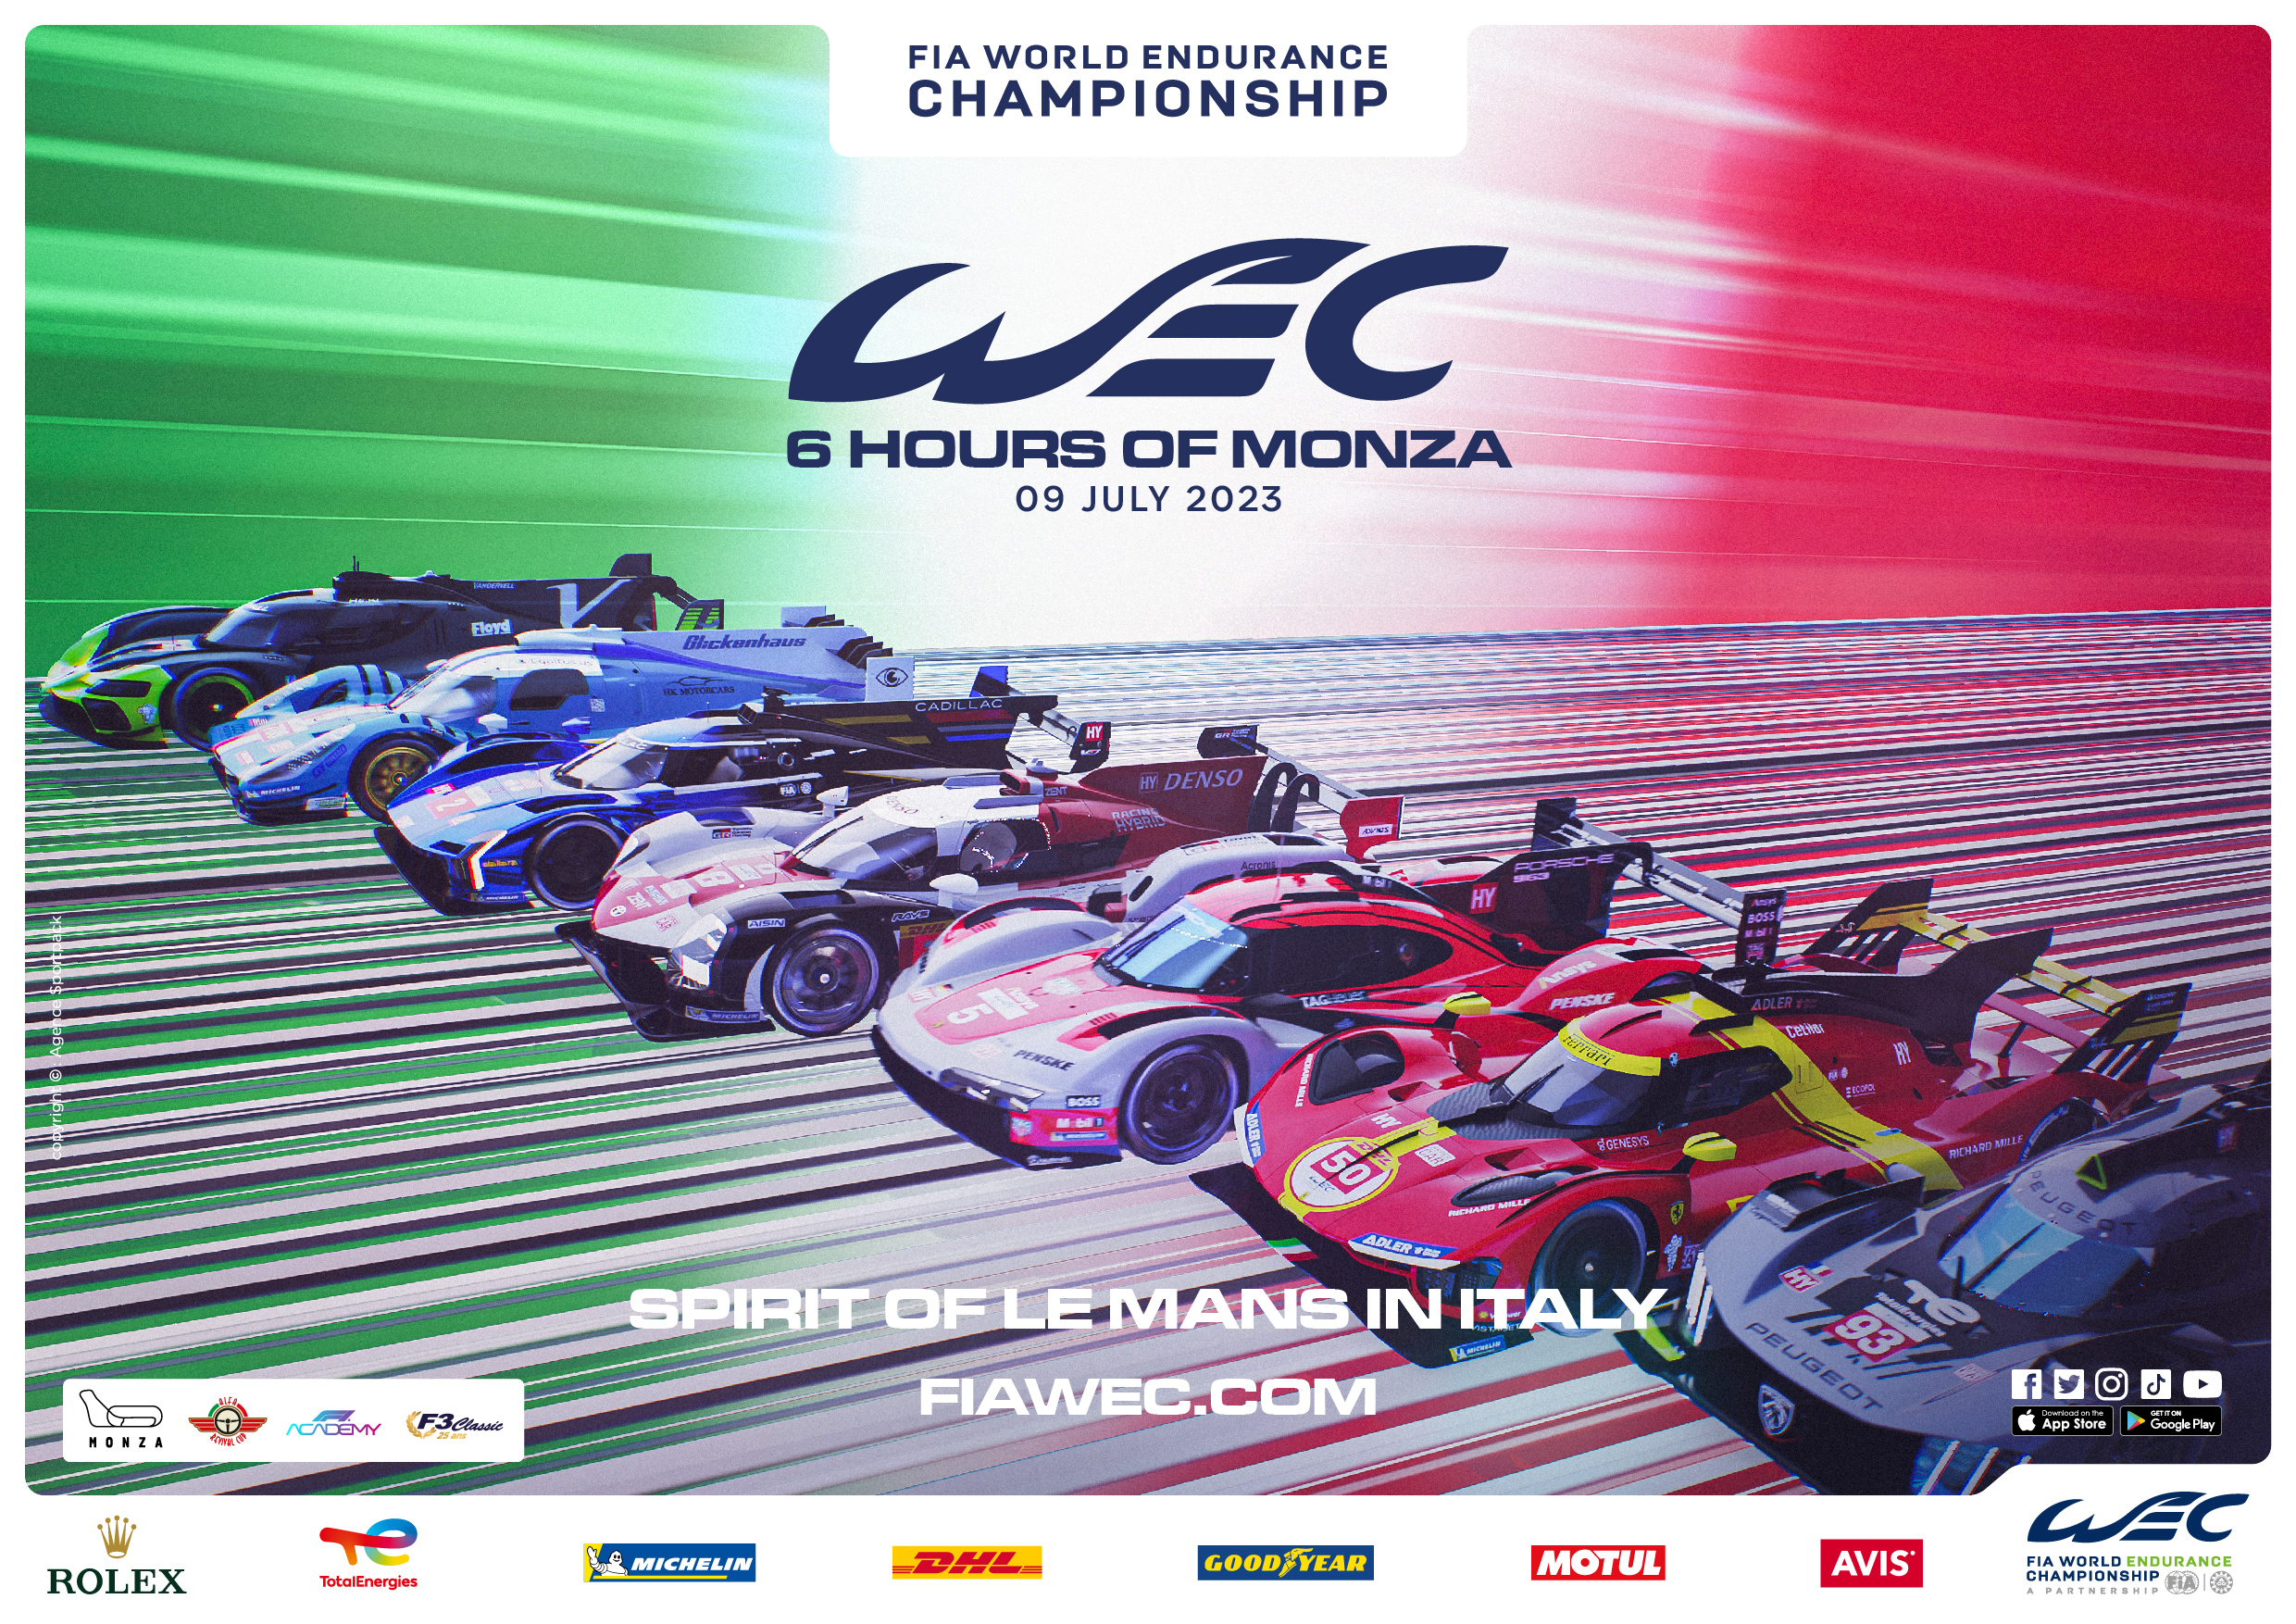 World Endurance Championship schedule